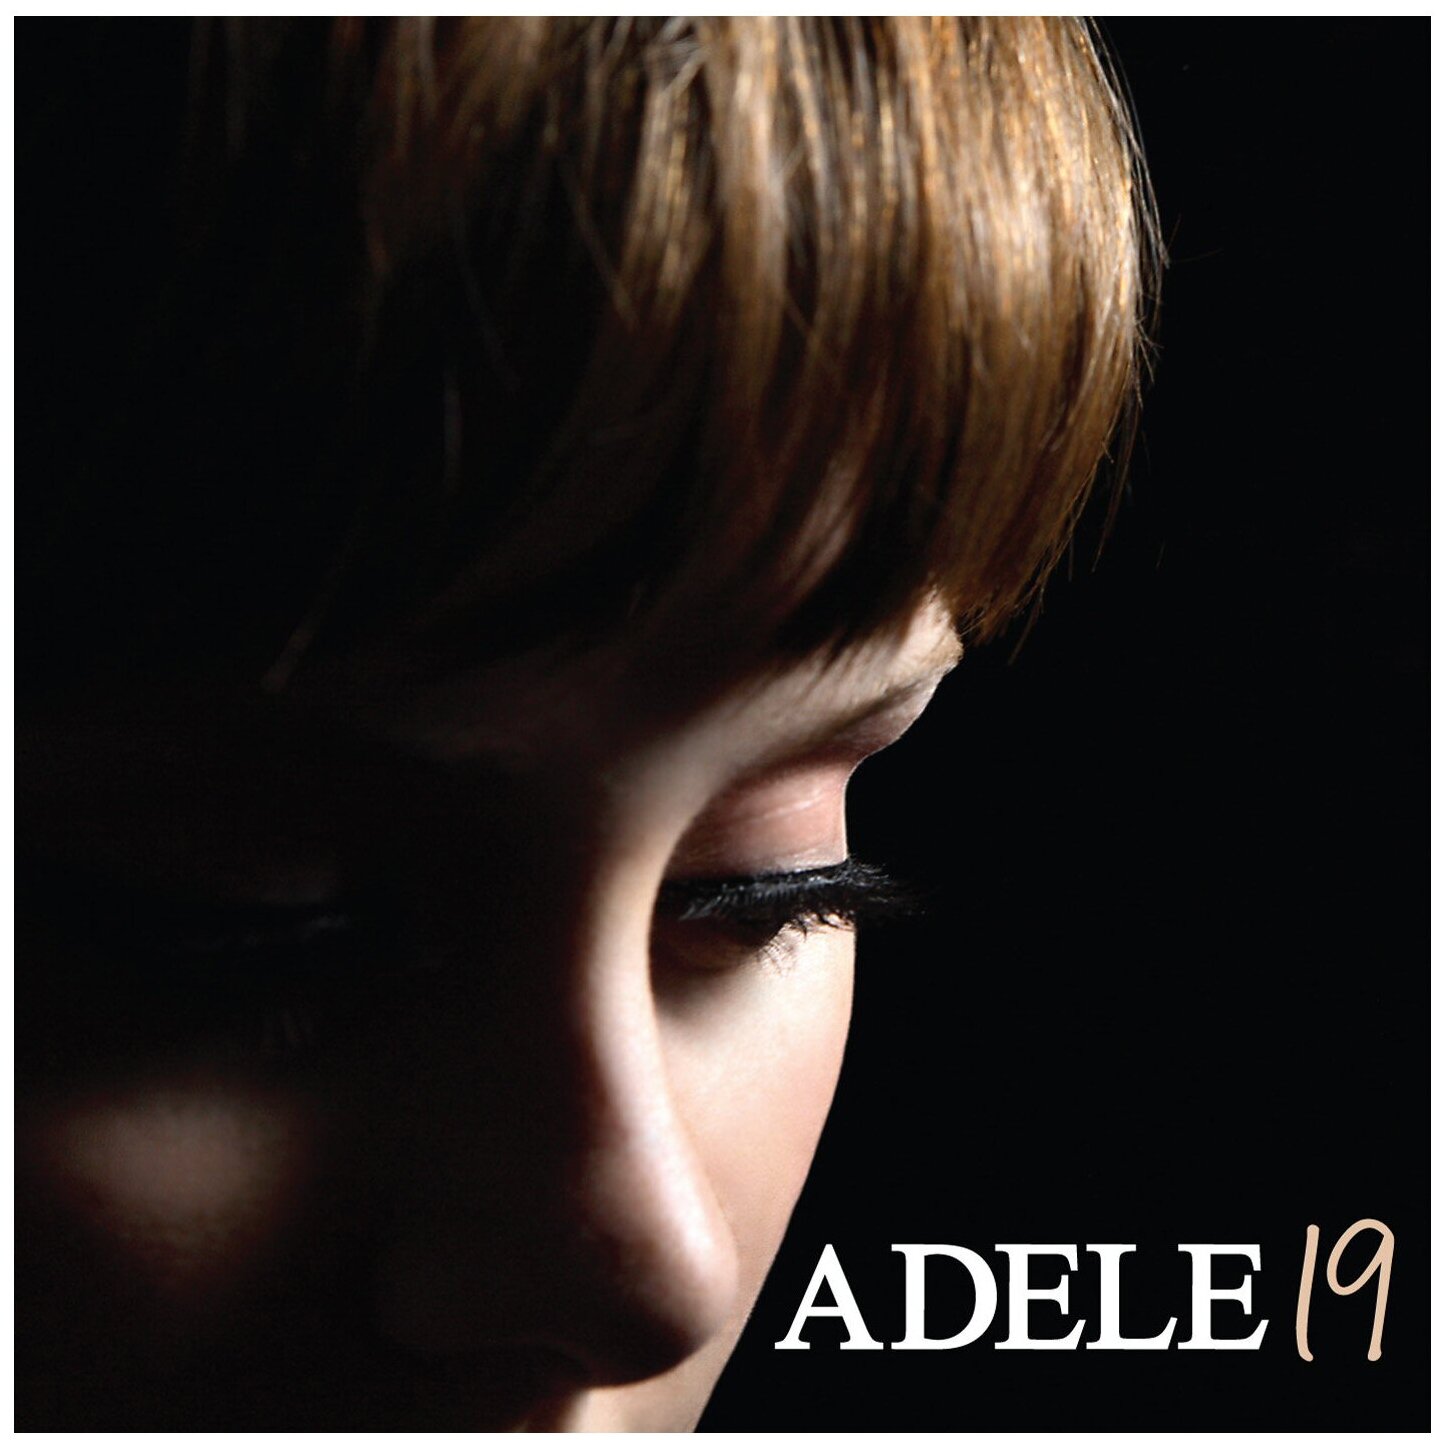 XL Recordings Adele. 19 (виниловая пластинка)